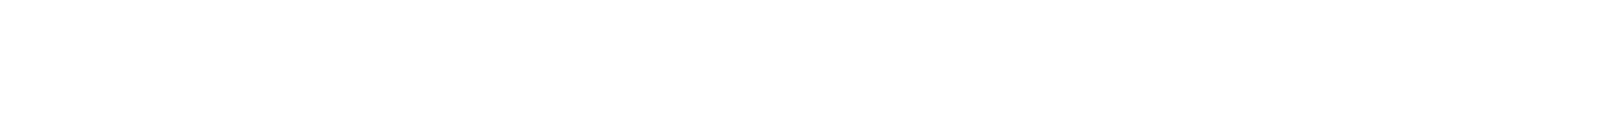 banner-bottom-shape